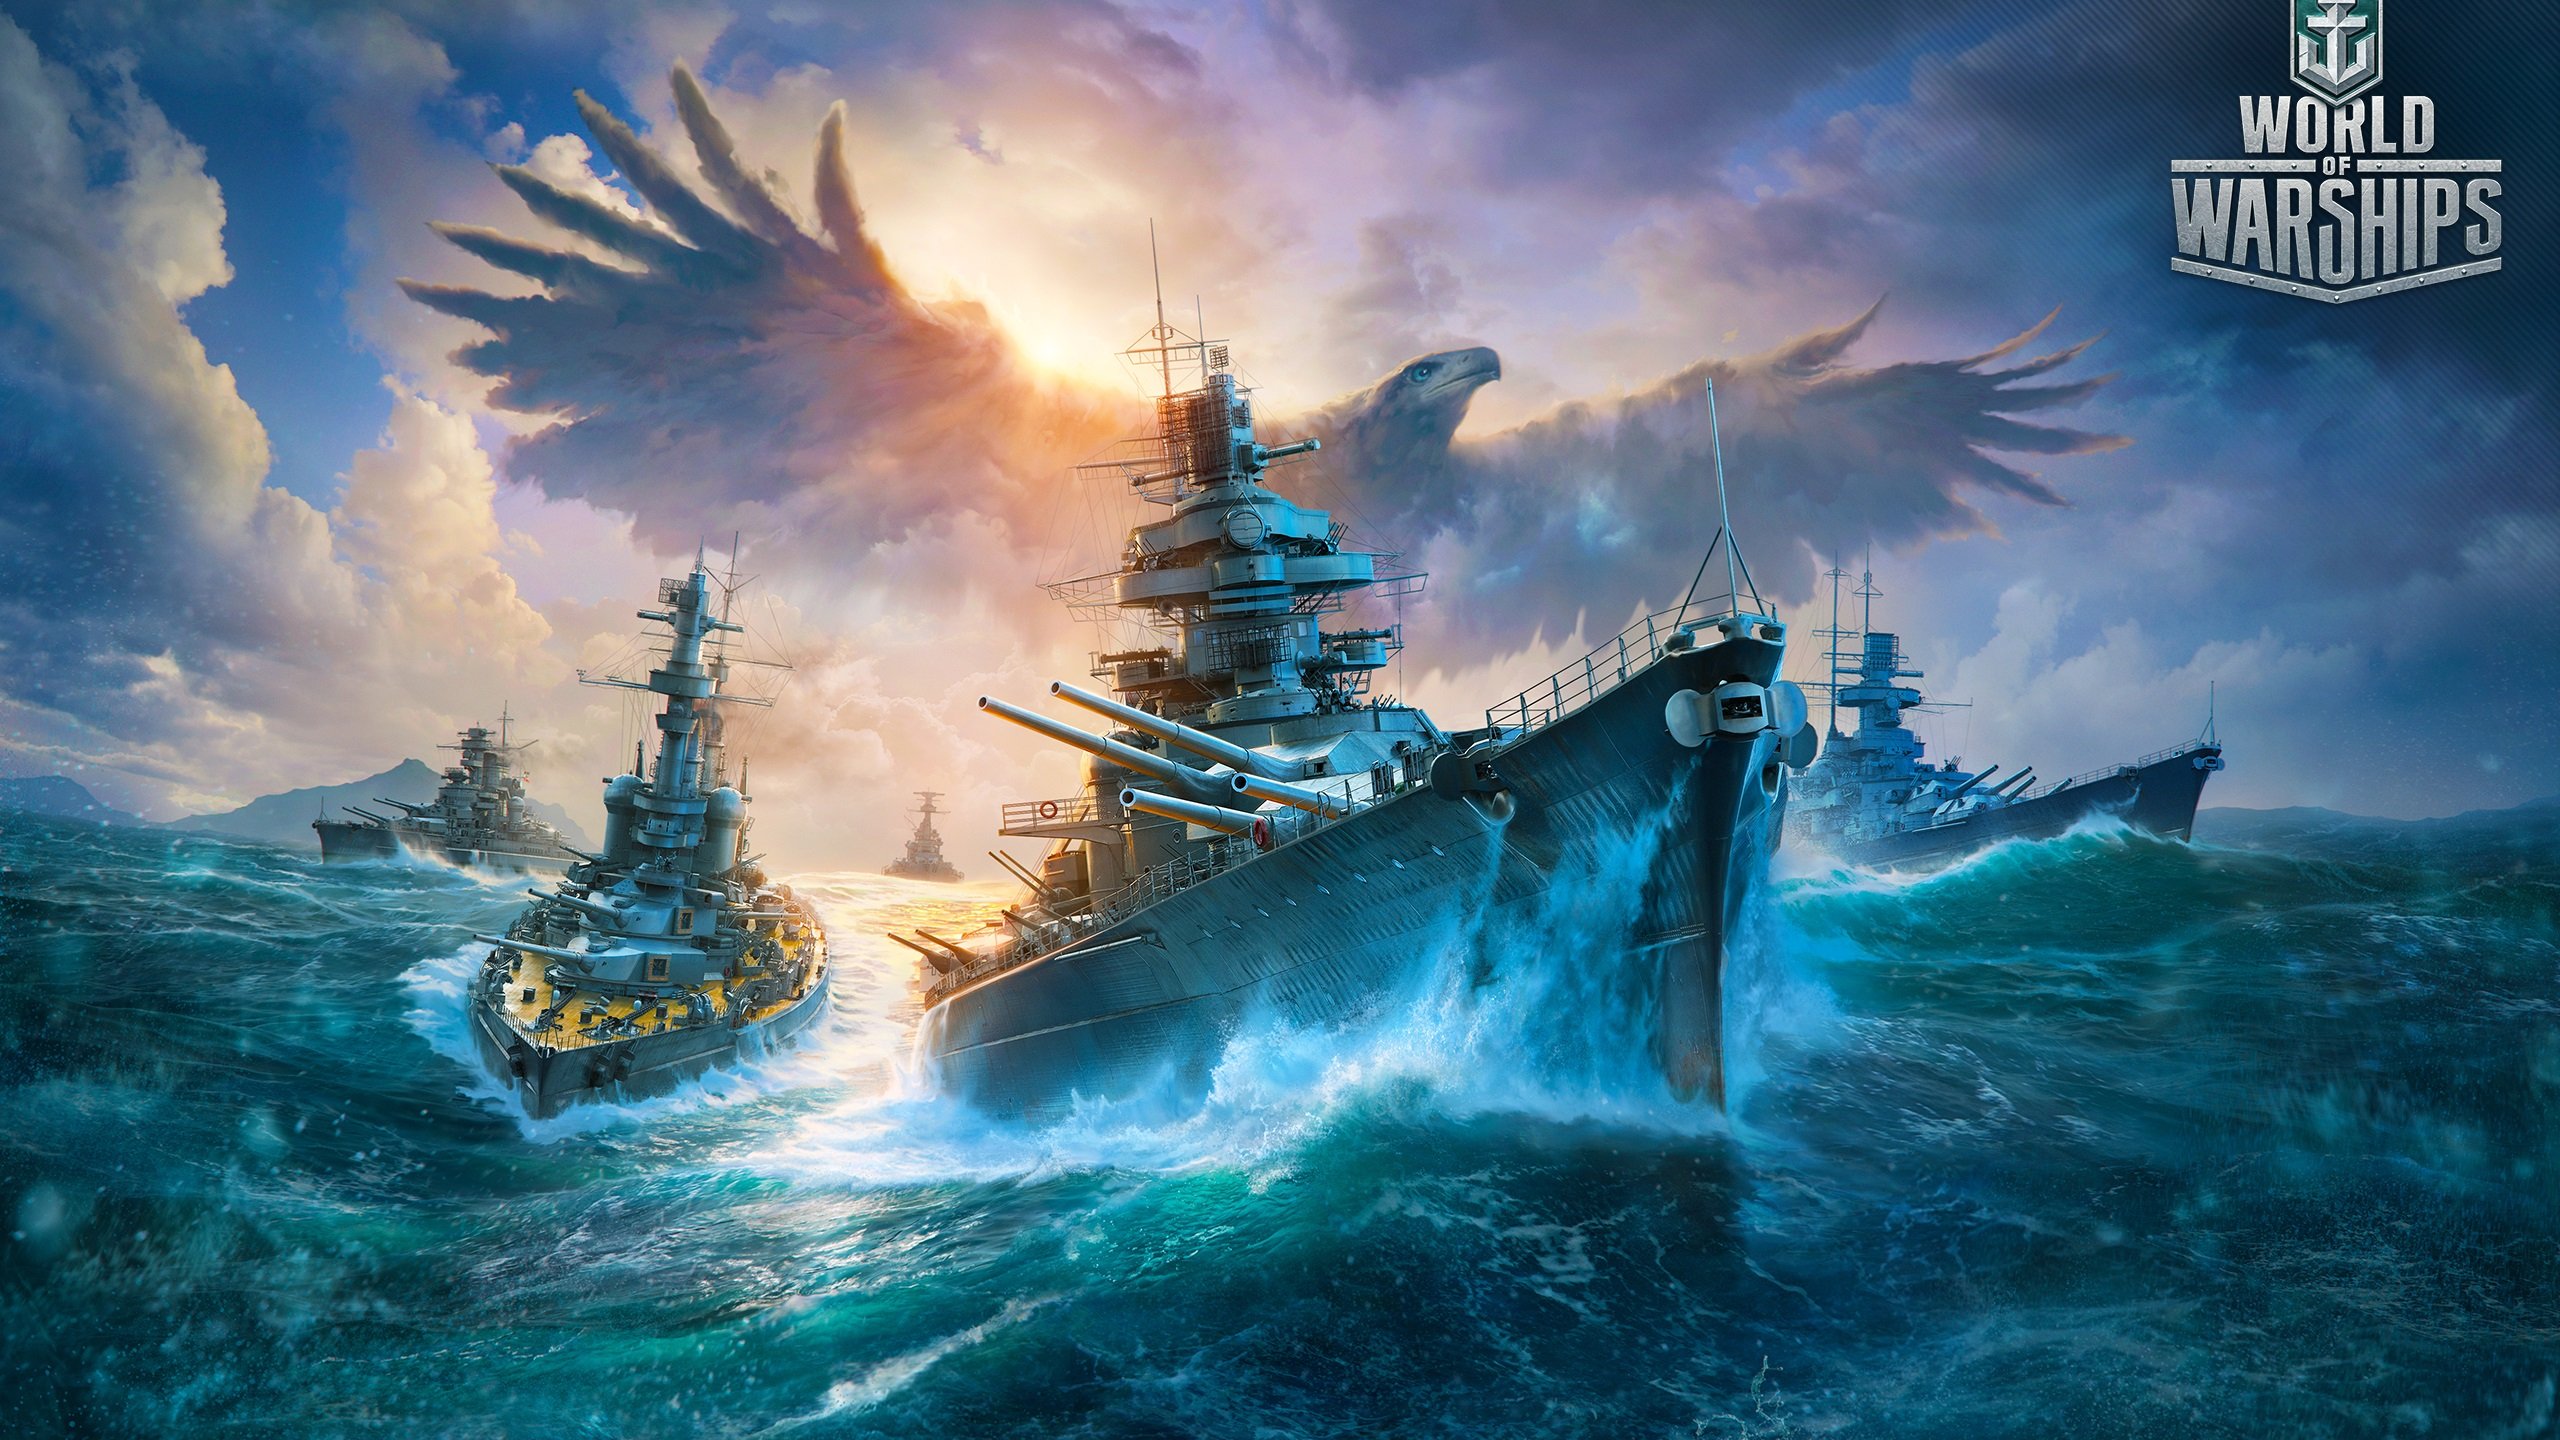 Патч 13.0 для World of Warships: японские авианосцы, новый боевой пропуск и многочисленные геймплейные улучшения